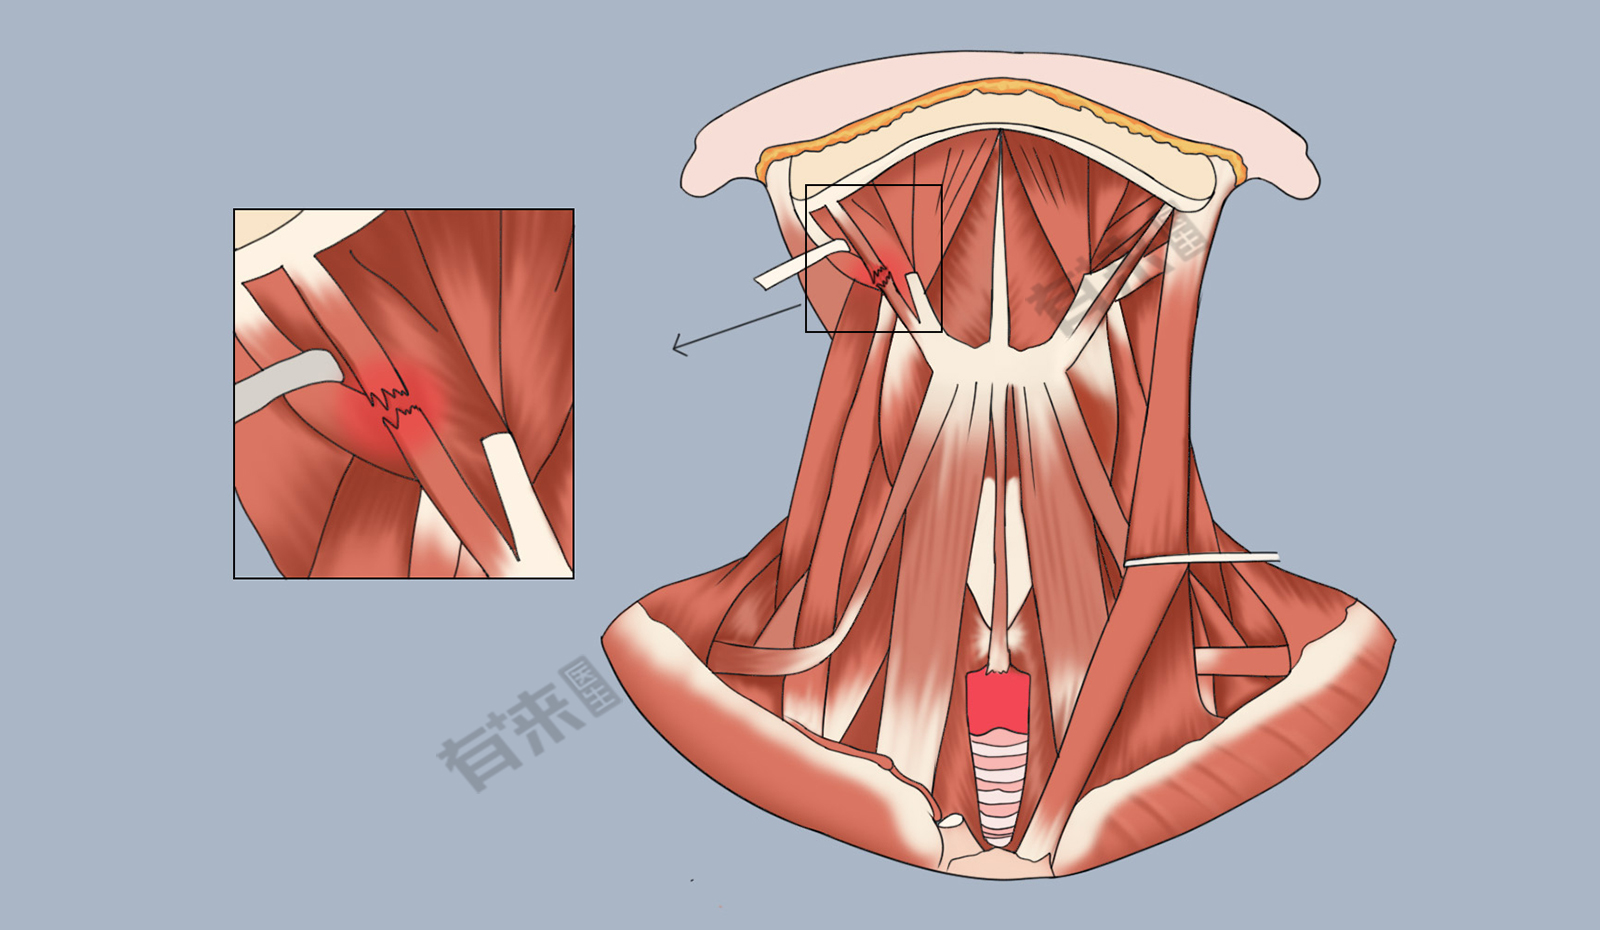 胸骨舌骨肌综合征图片